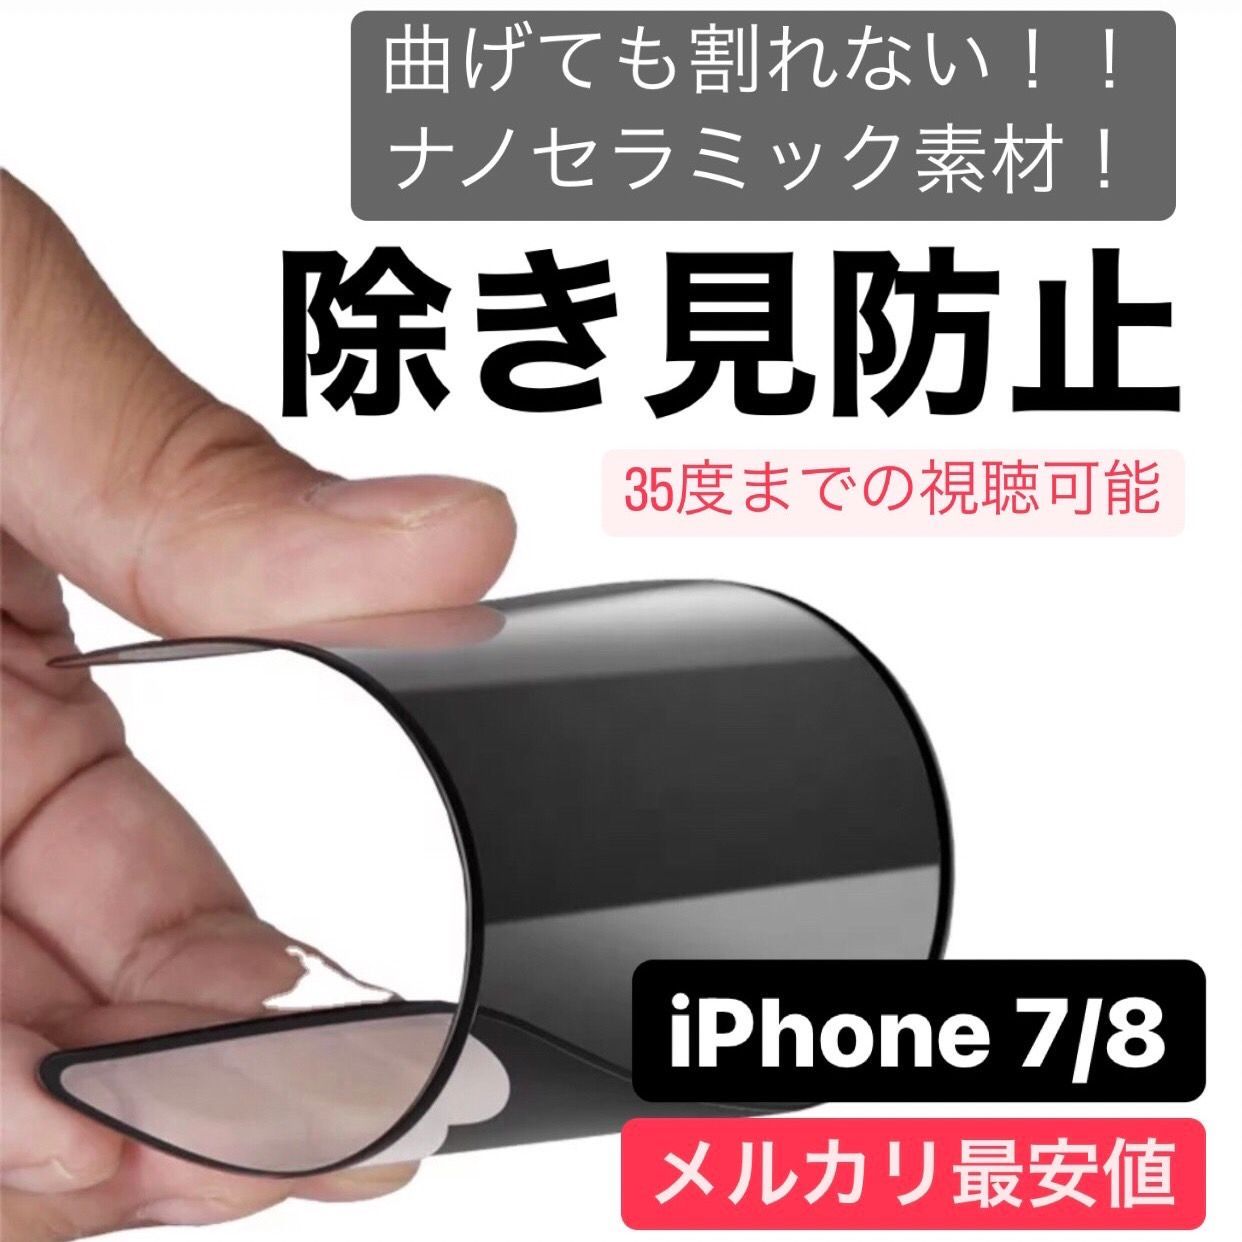 iPhone 保護フィルム iPhone7 iPhone8 アイフォン7 アイフォン8 iPhoneSE3 iPhoneSE2 第2世代 第3世代 覗き見防止 プライバシー アンチグレア 指紋防止 さらさら プライバシー 7 8 SE3 SE2 フィルム